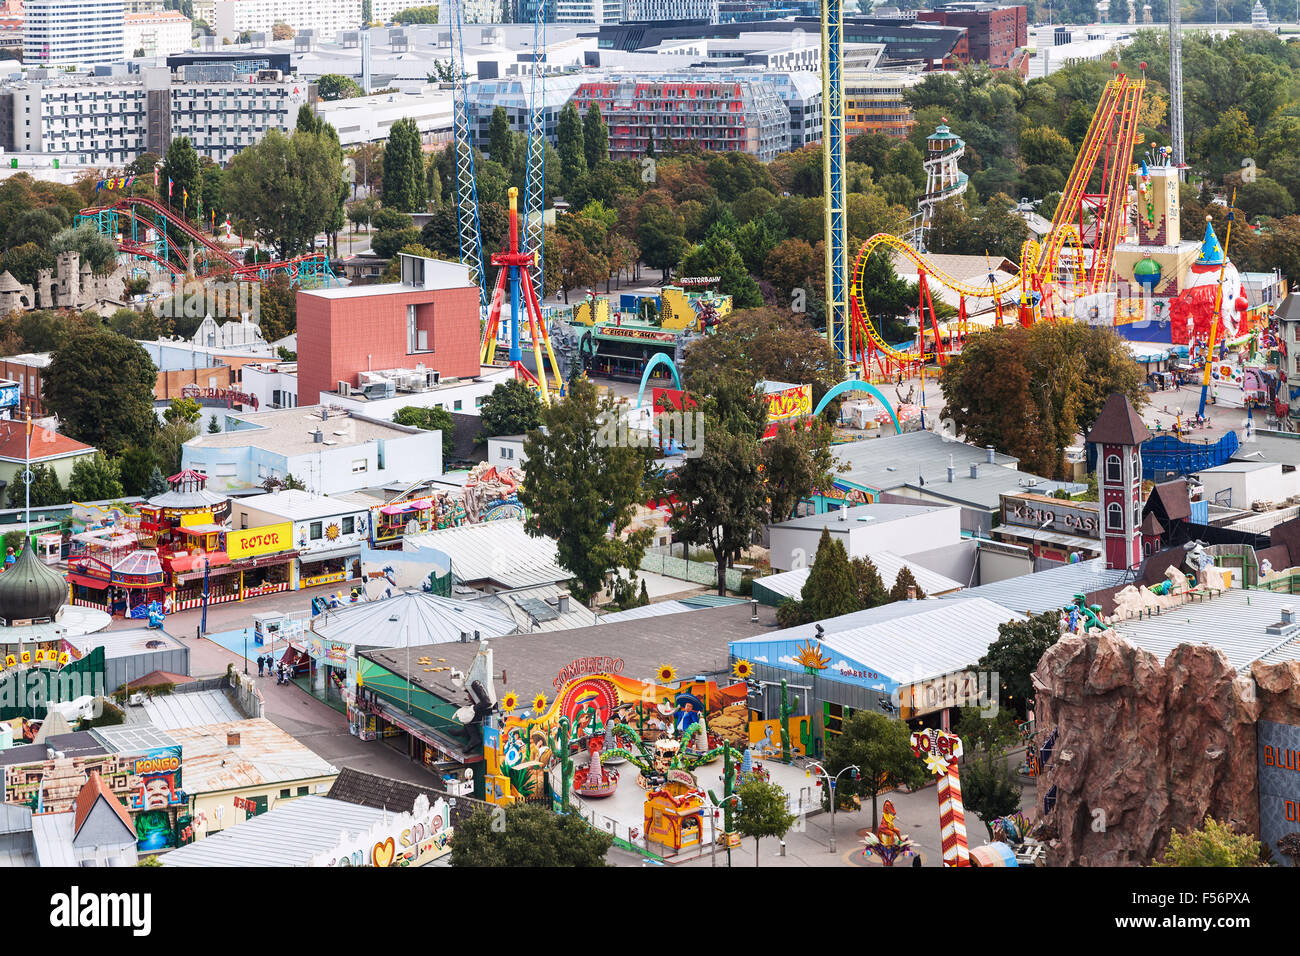 VIENNA, AUSTRIA - SEPTEMBER 30, 2015: above view of amusement park Wurstelprater in Wiener Prater park in Vienna. The Prater par Stock Photo